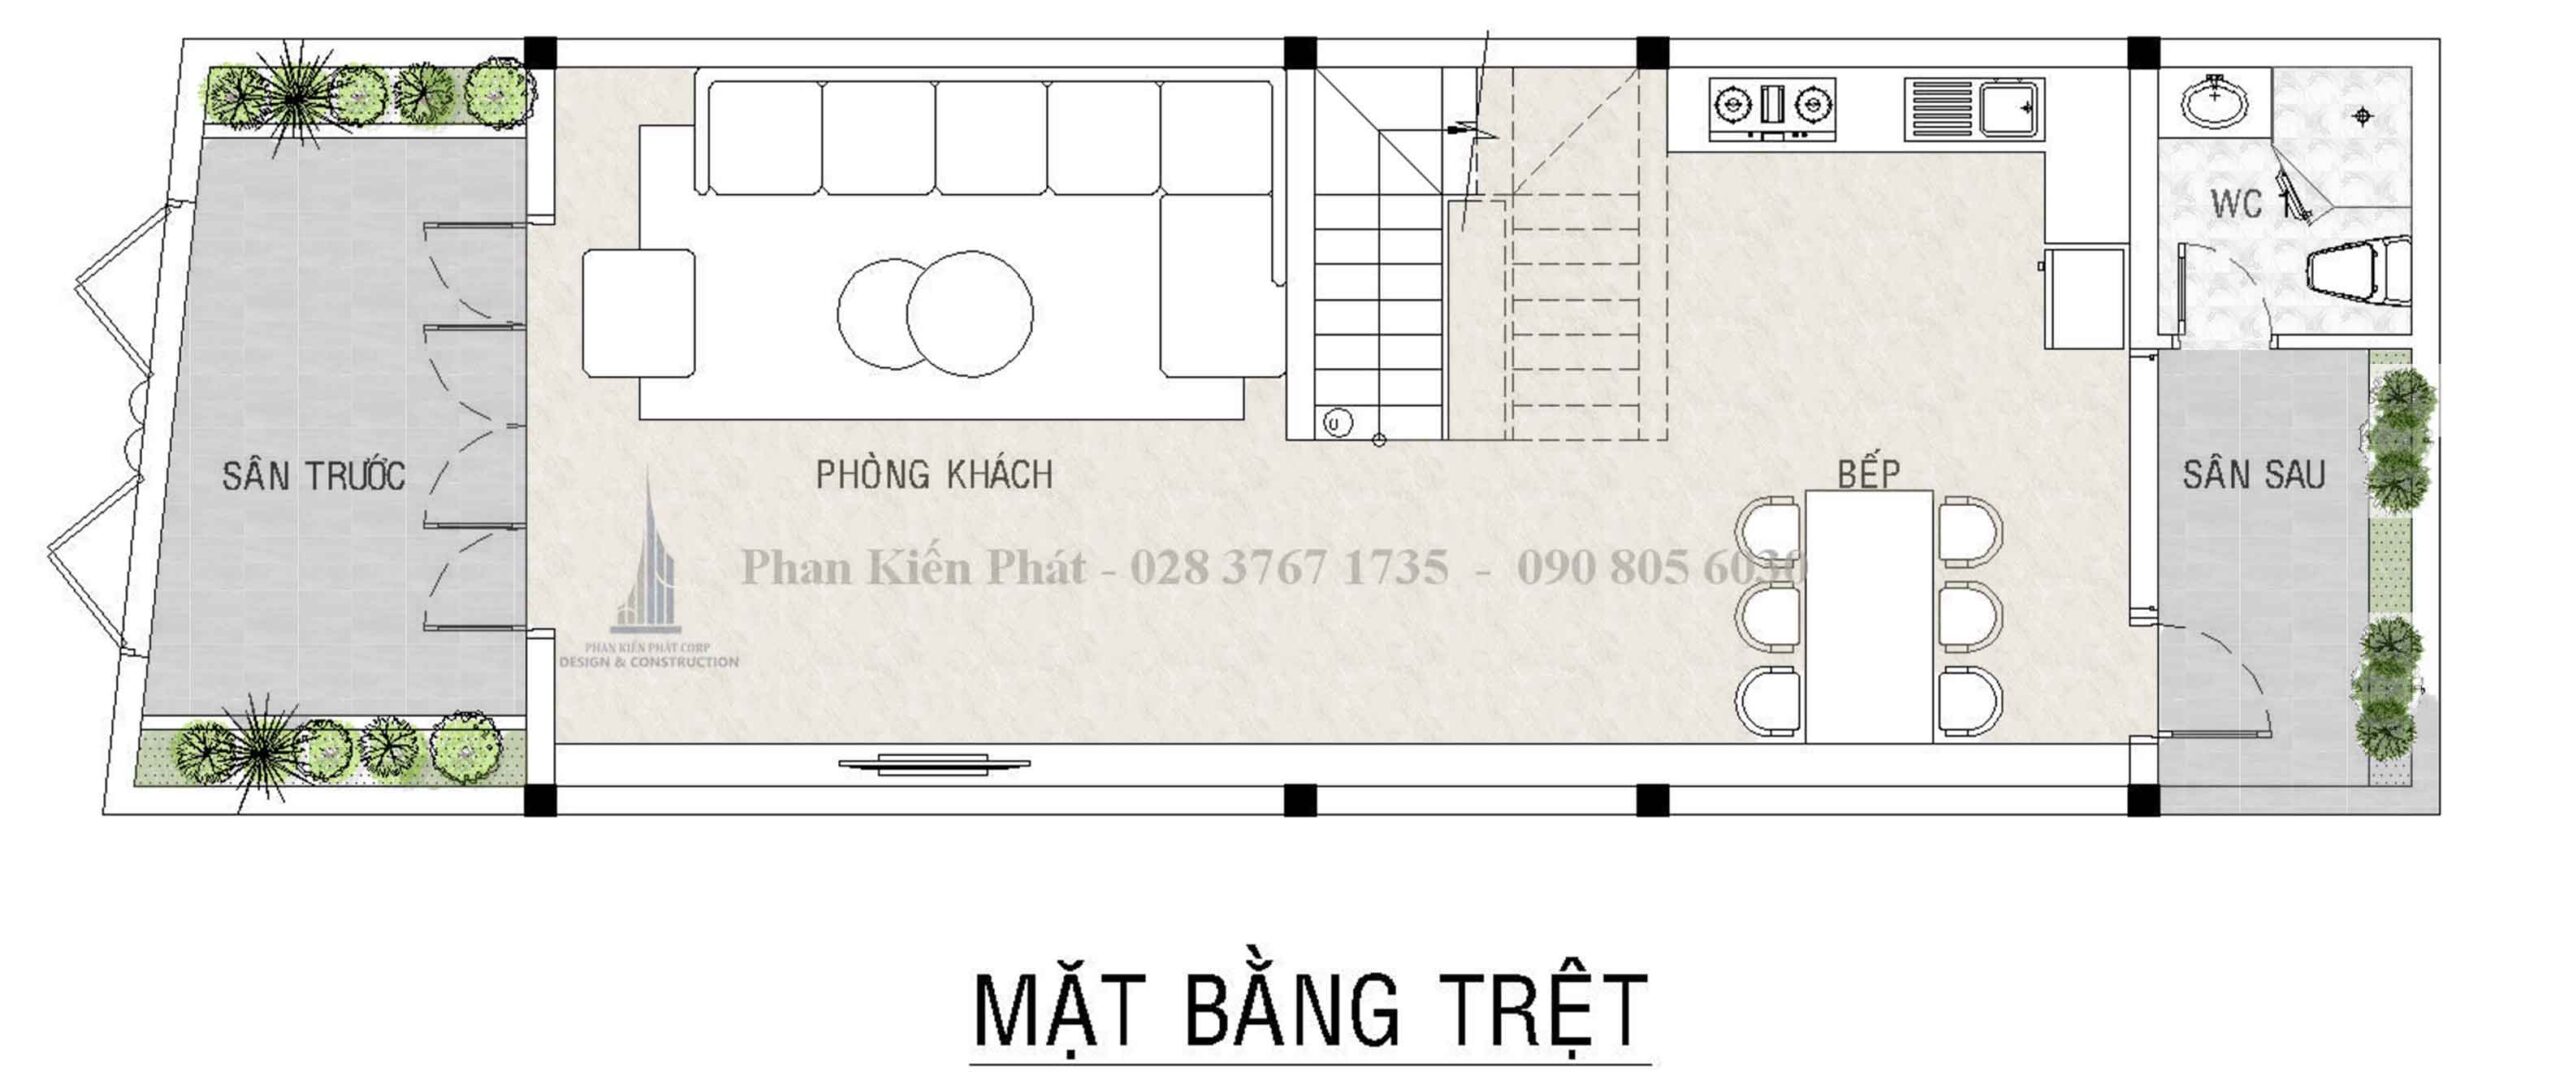 Mat Bang Cong Nang Nha Pho Tan Co Dien 1